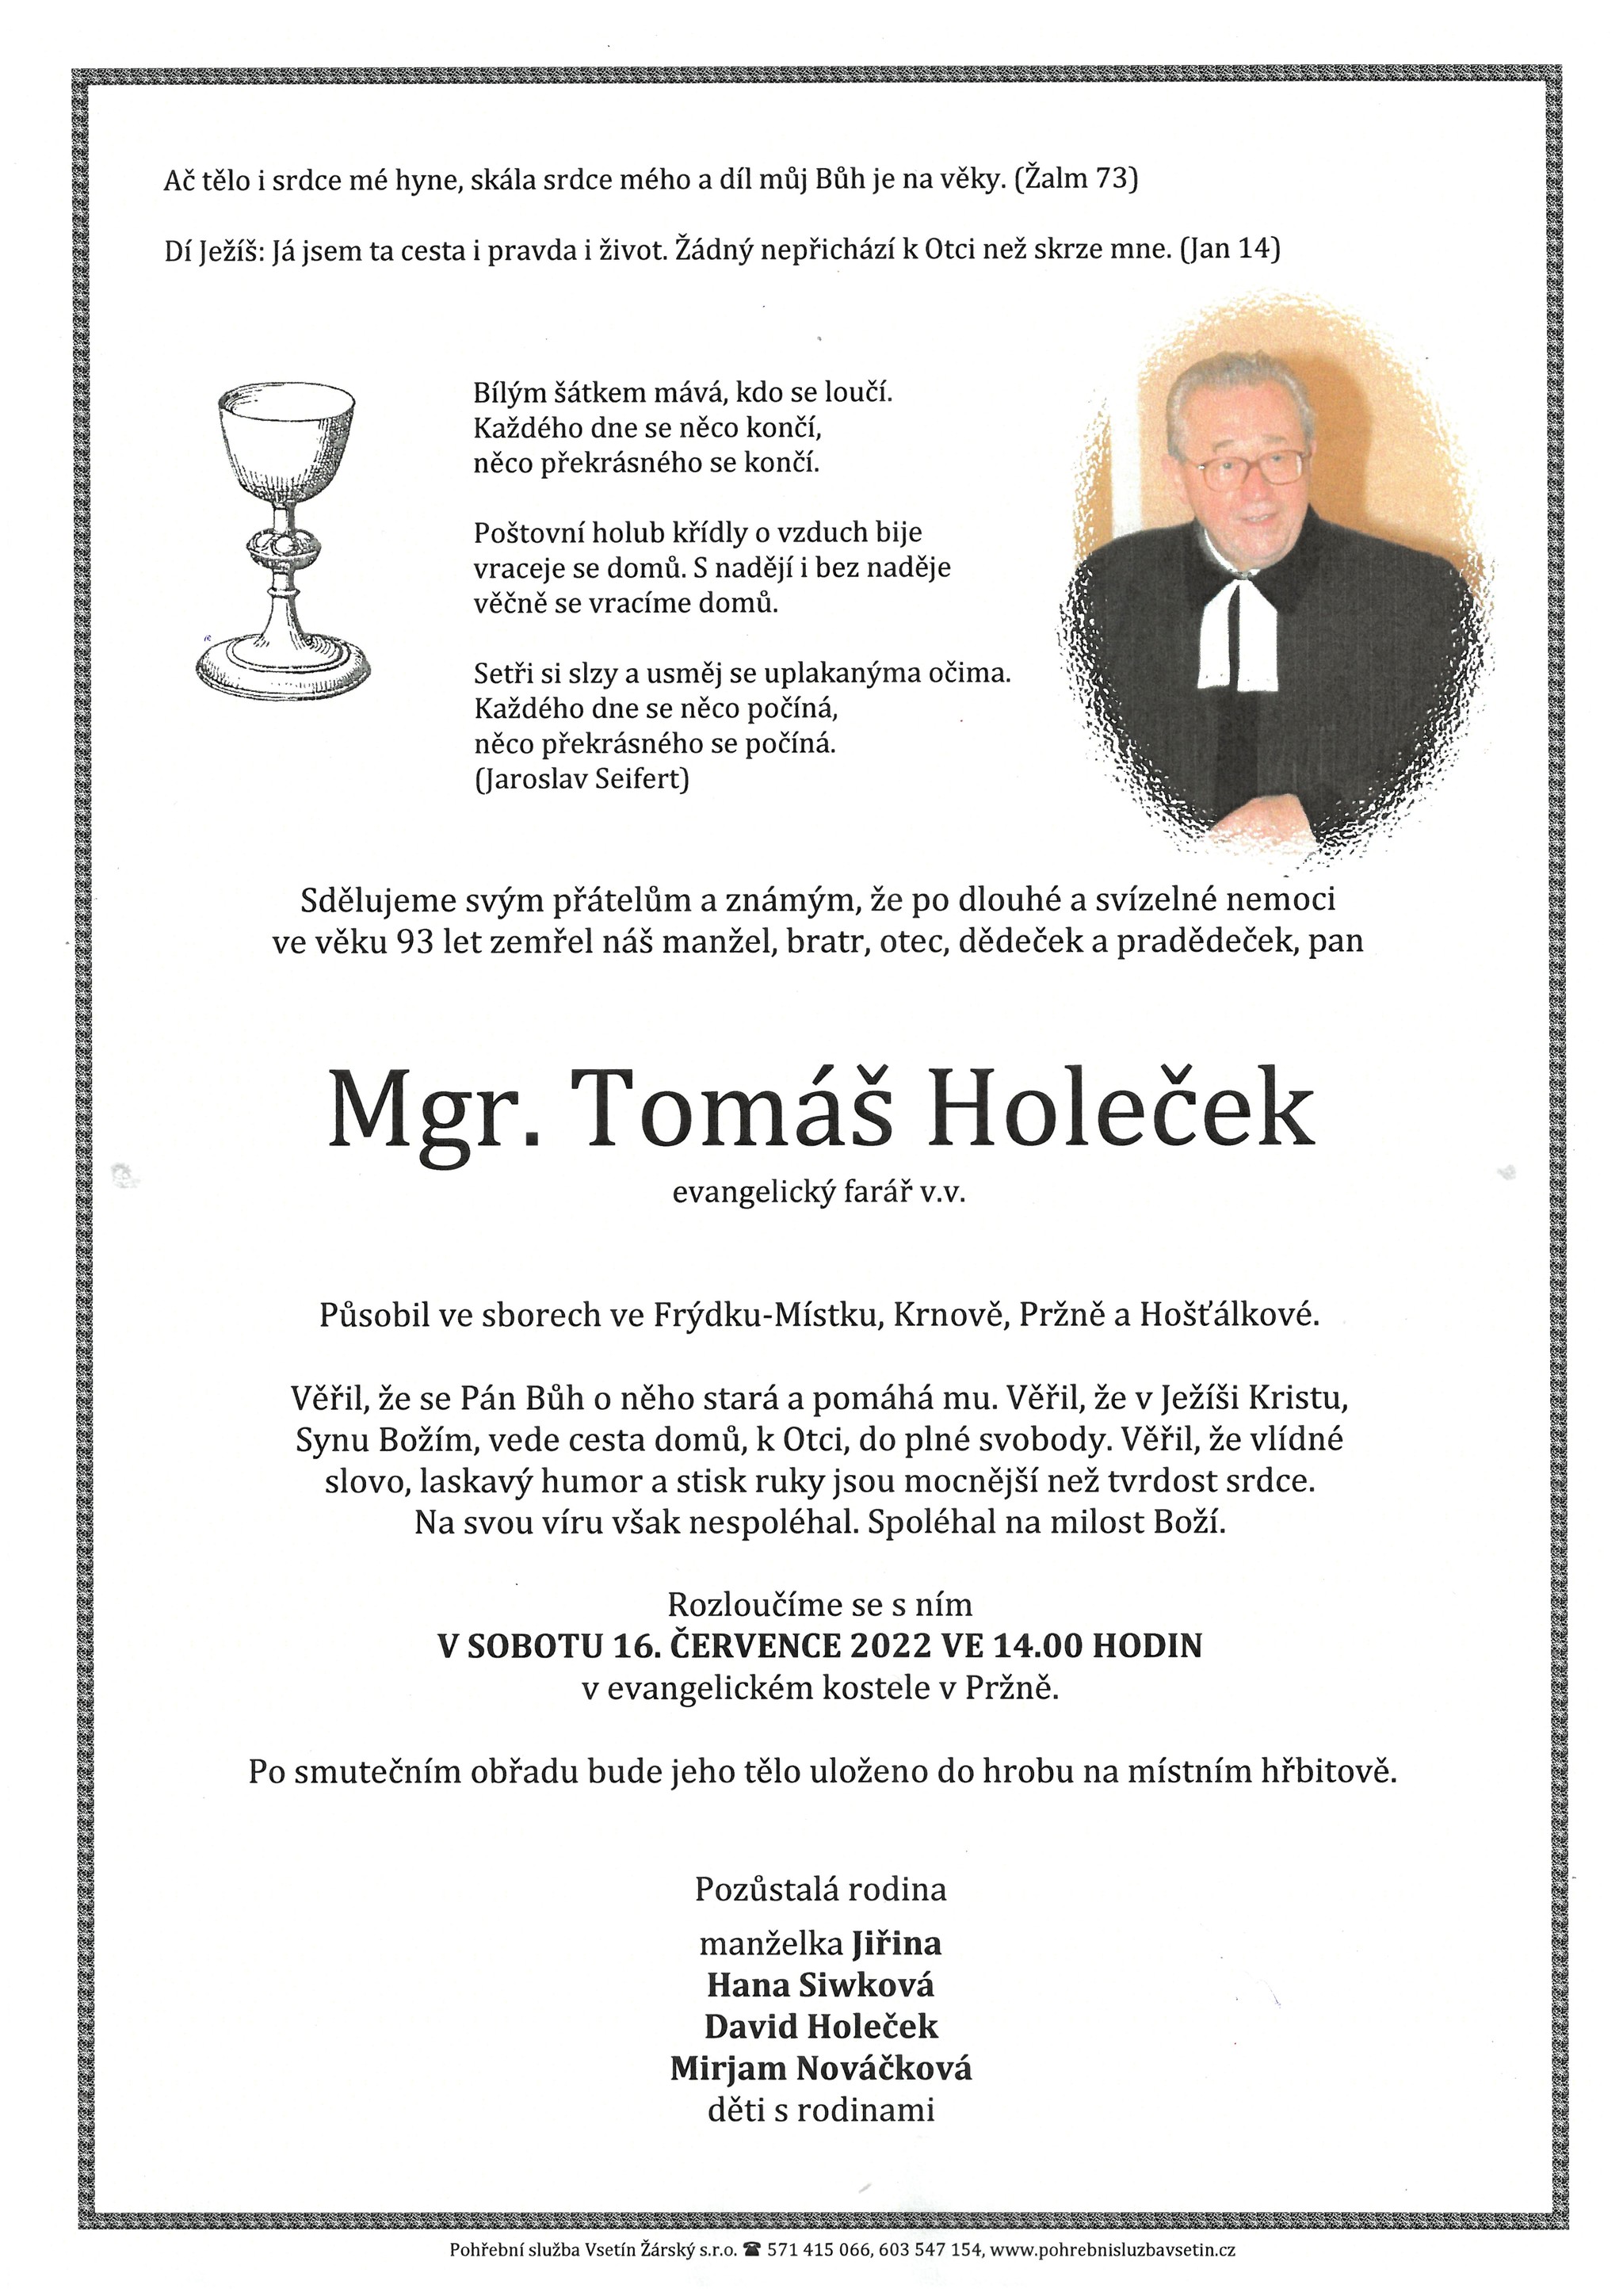 Mgr. Tomáš Holeček